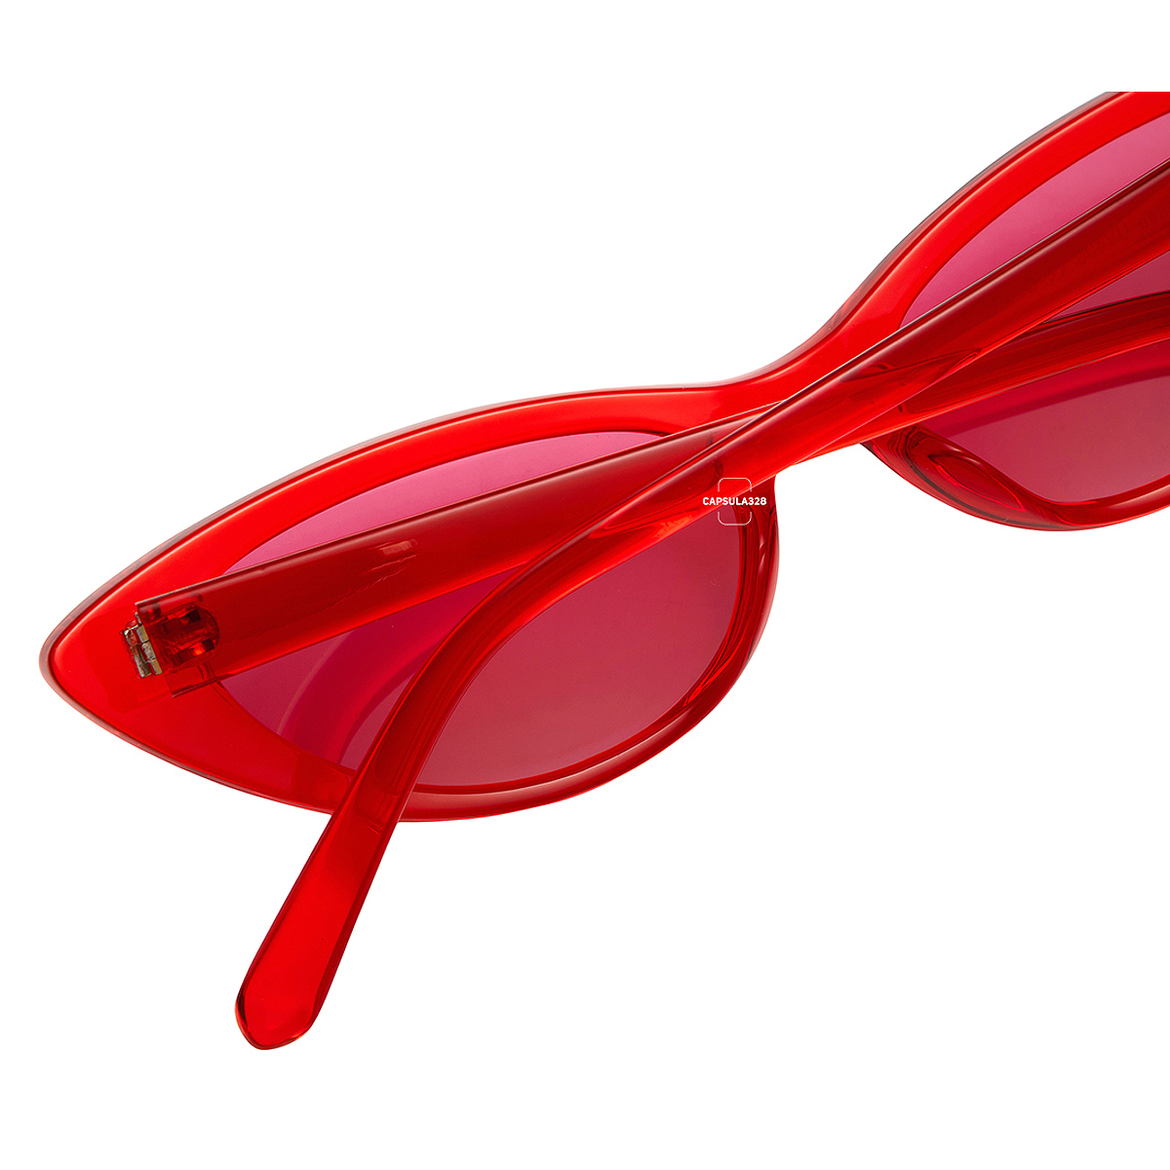 Сонцезахисні окуляри Cat Eye 6904